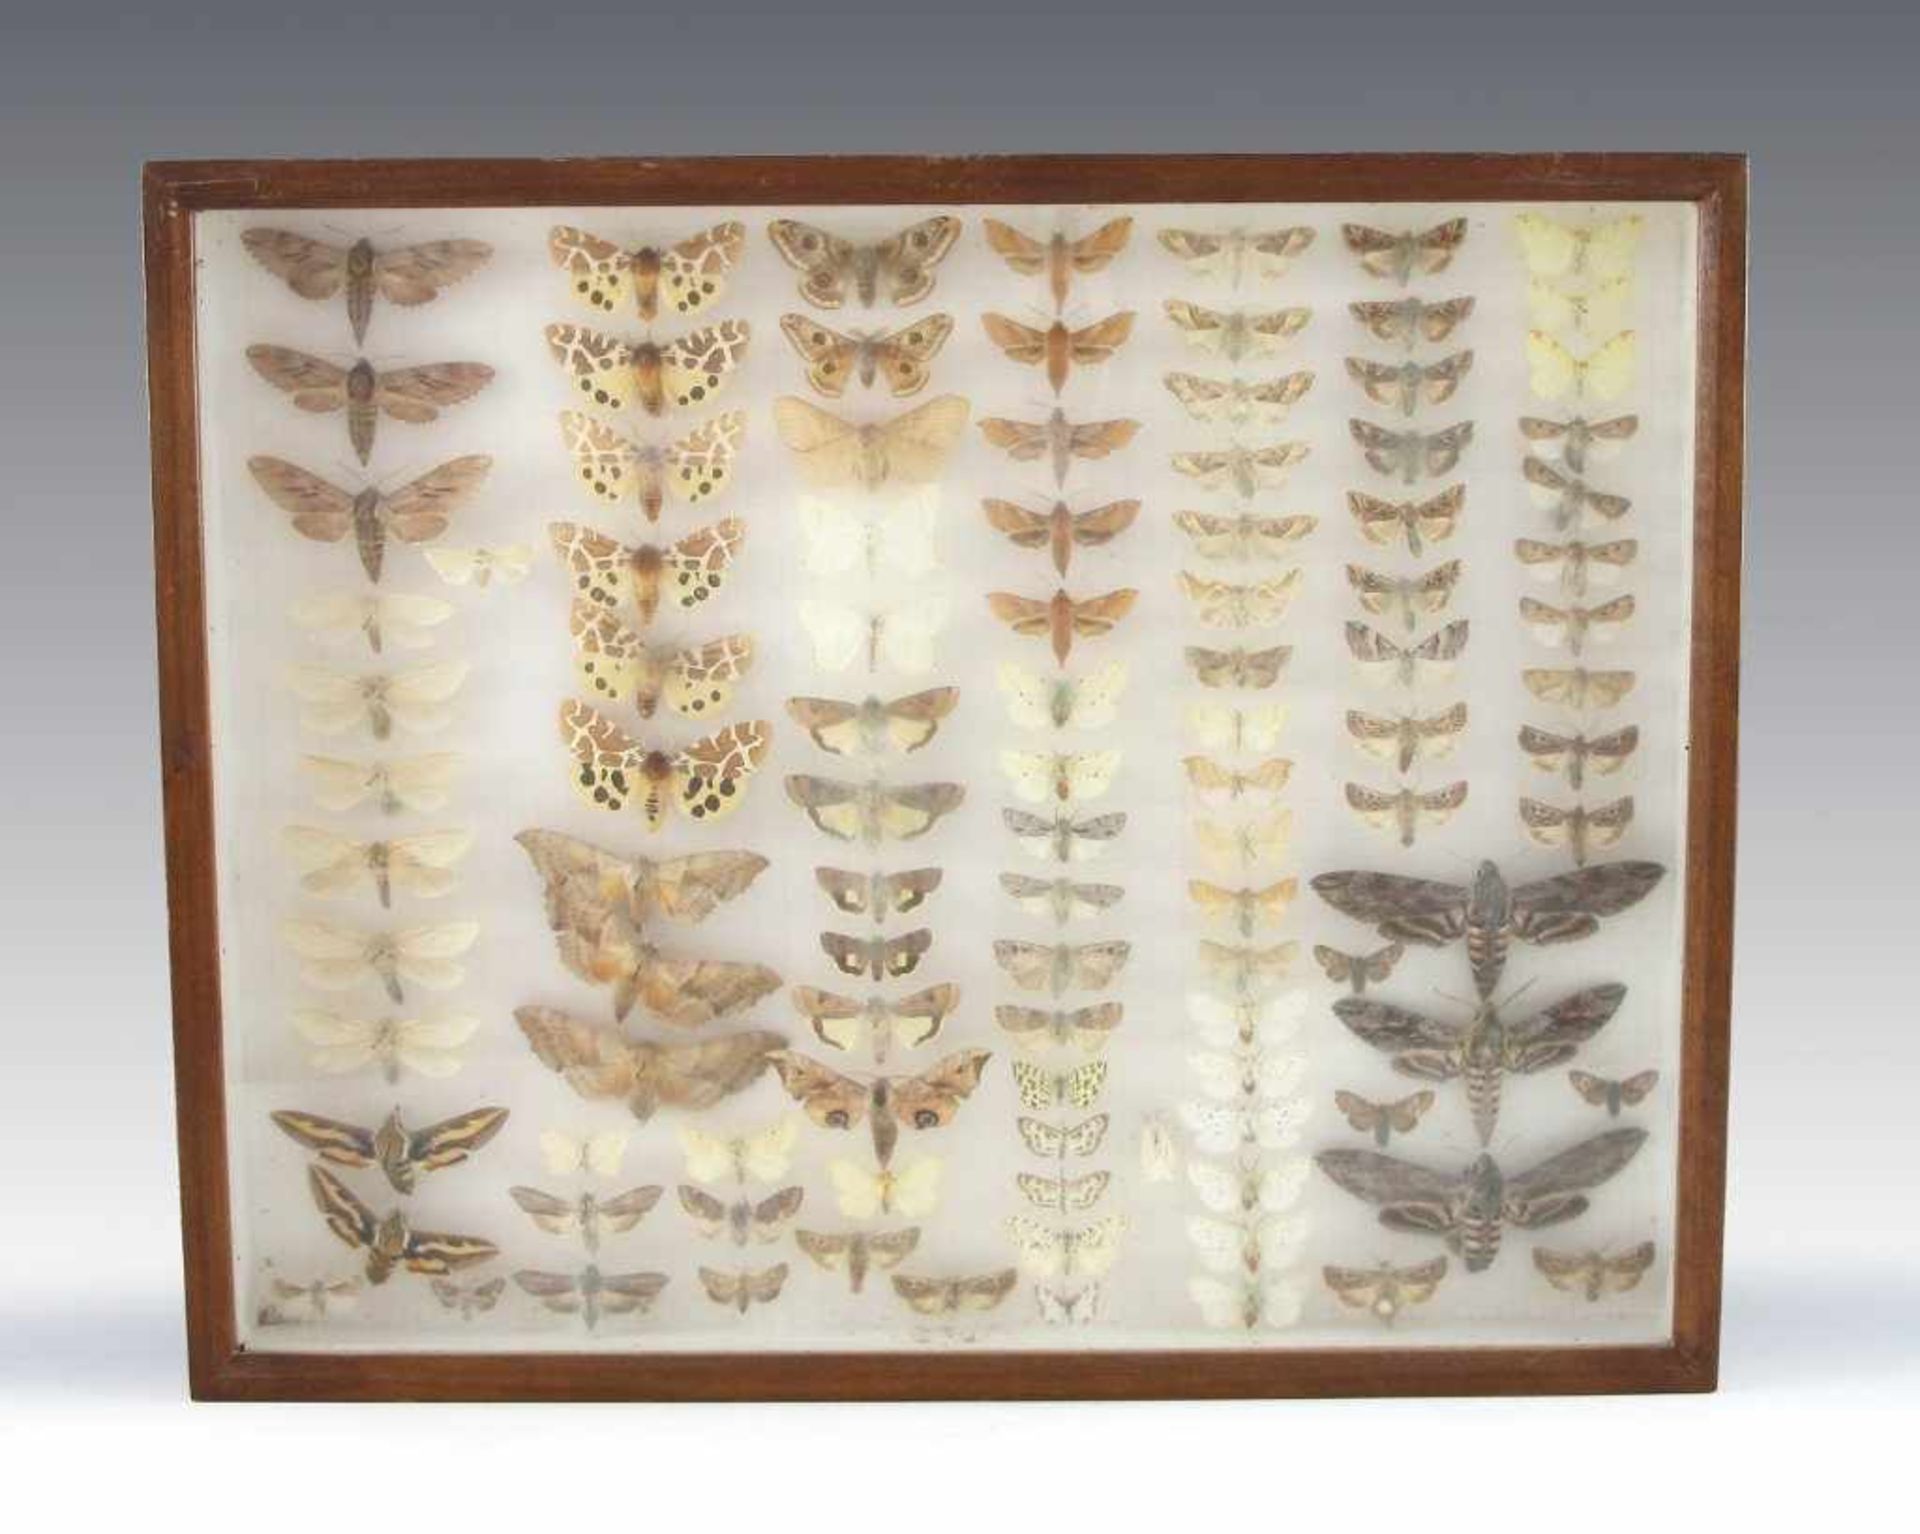 Drei Schaukästen mit Schmetterlingen. Kasten jew. 6 x 50 x 50 cm - Bild 3 aus 3